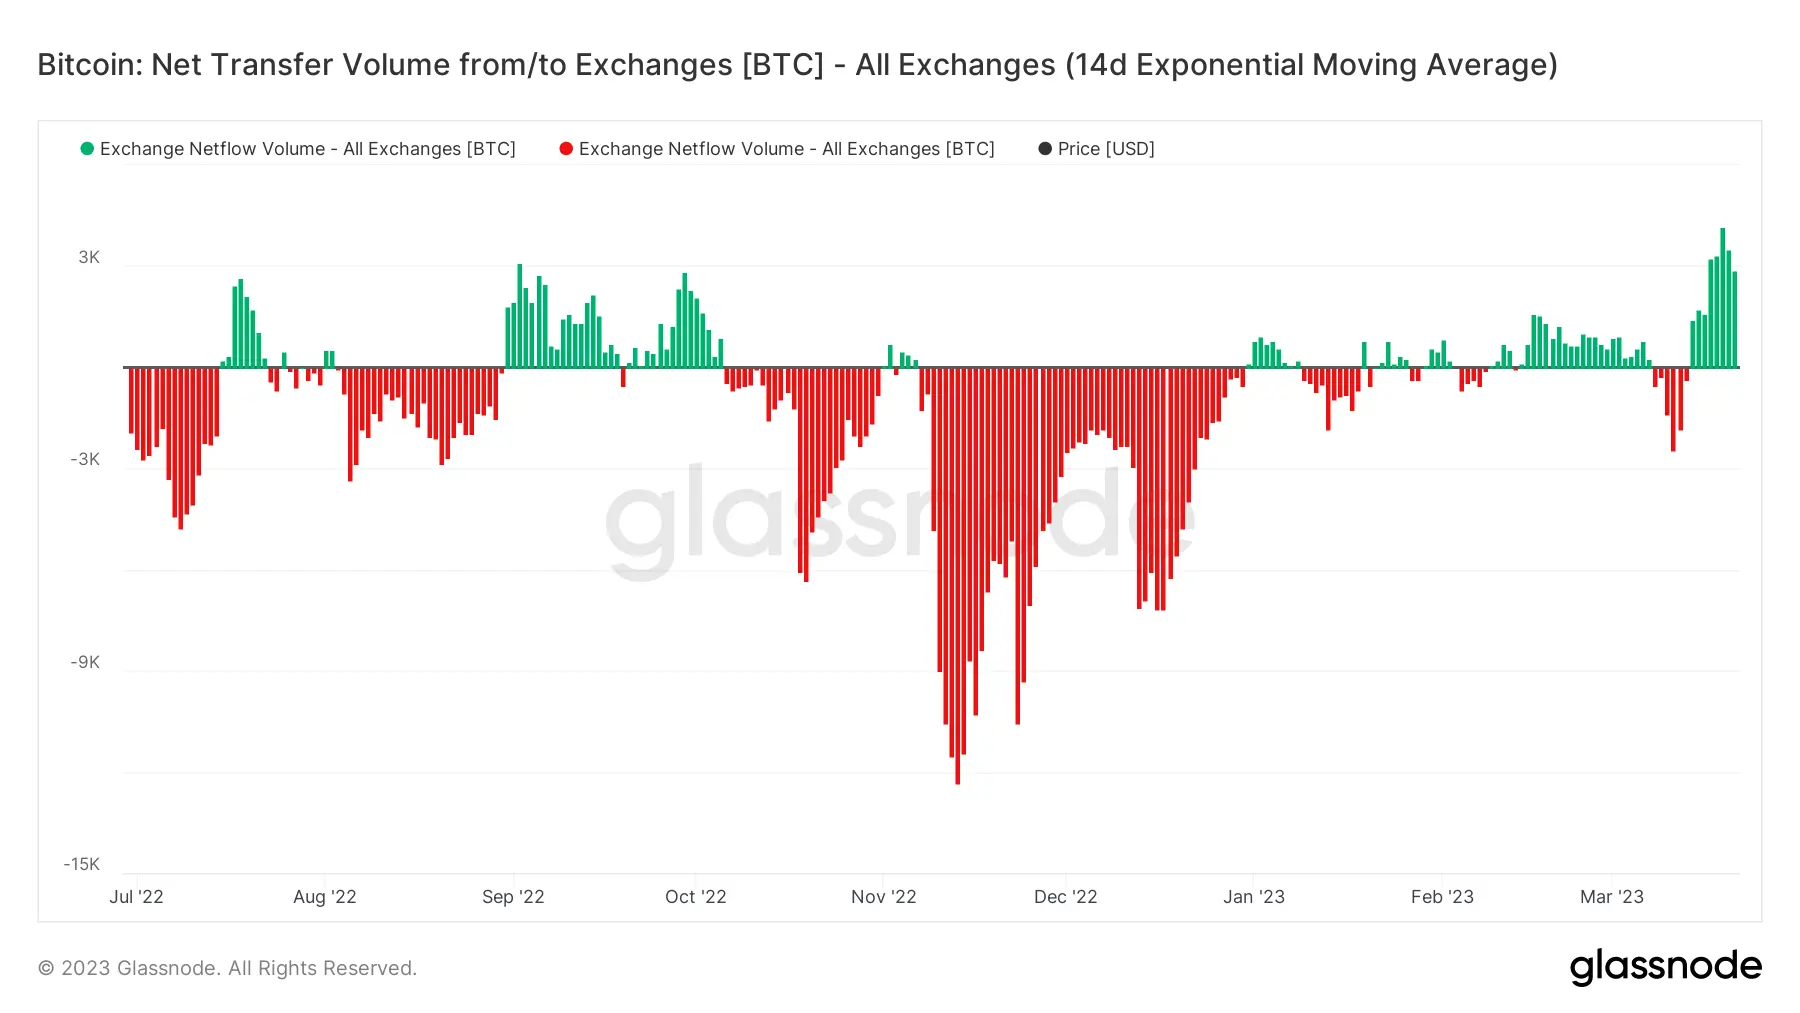 BTC-Transfervolumen auf Exchanges, Quelle: Glassnode